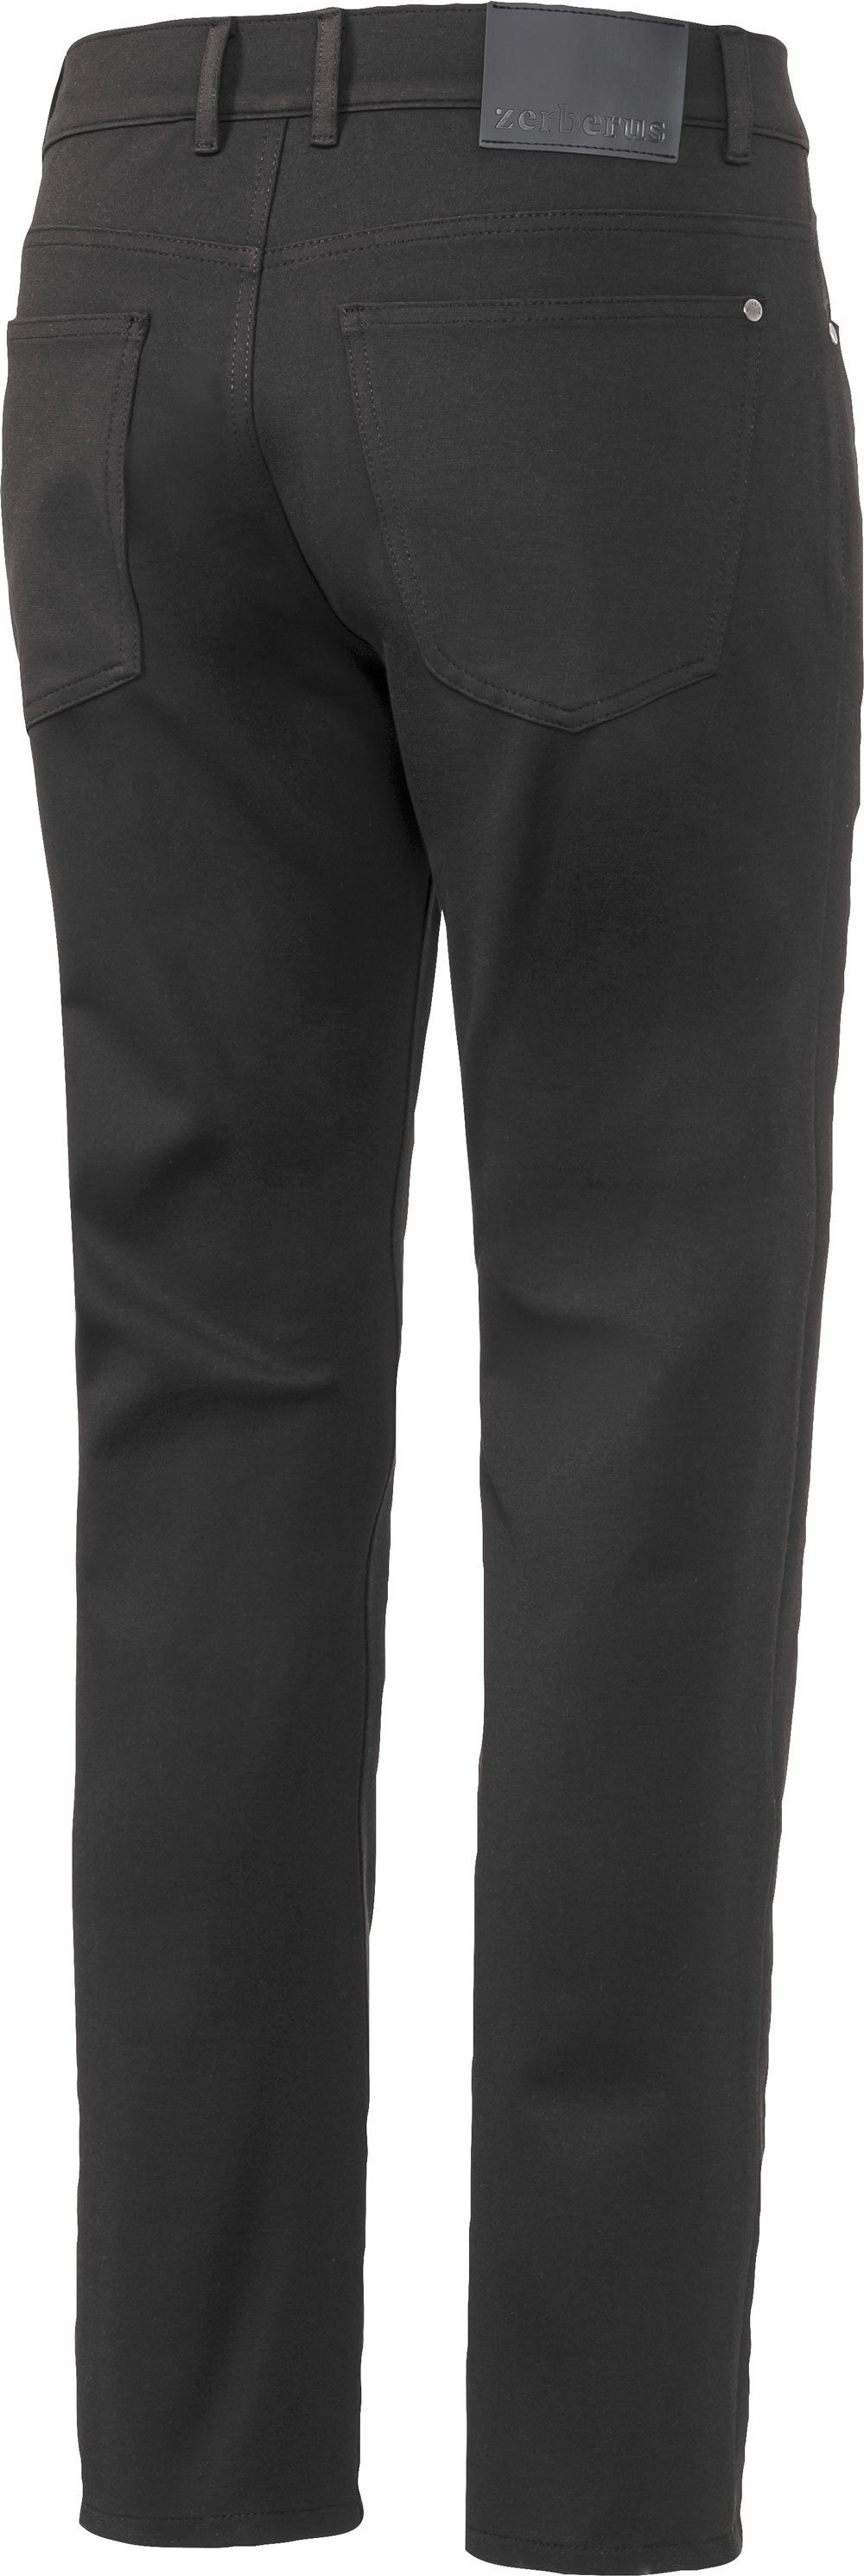 Jerseyhose 5-Pocket-Stil Zerberus schwarz Passform, perfekte im lässigen